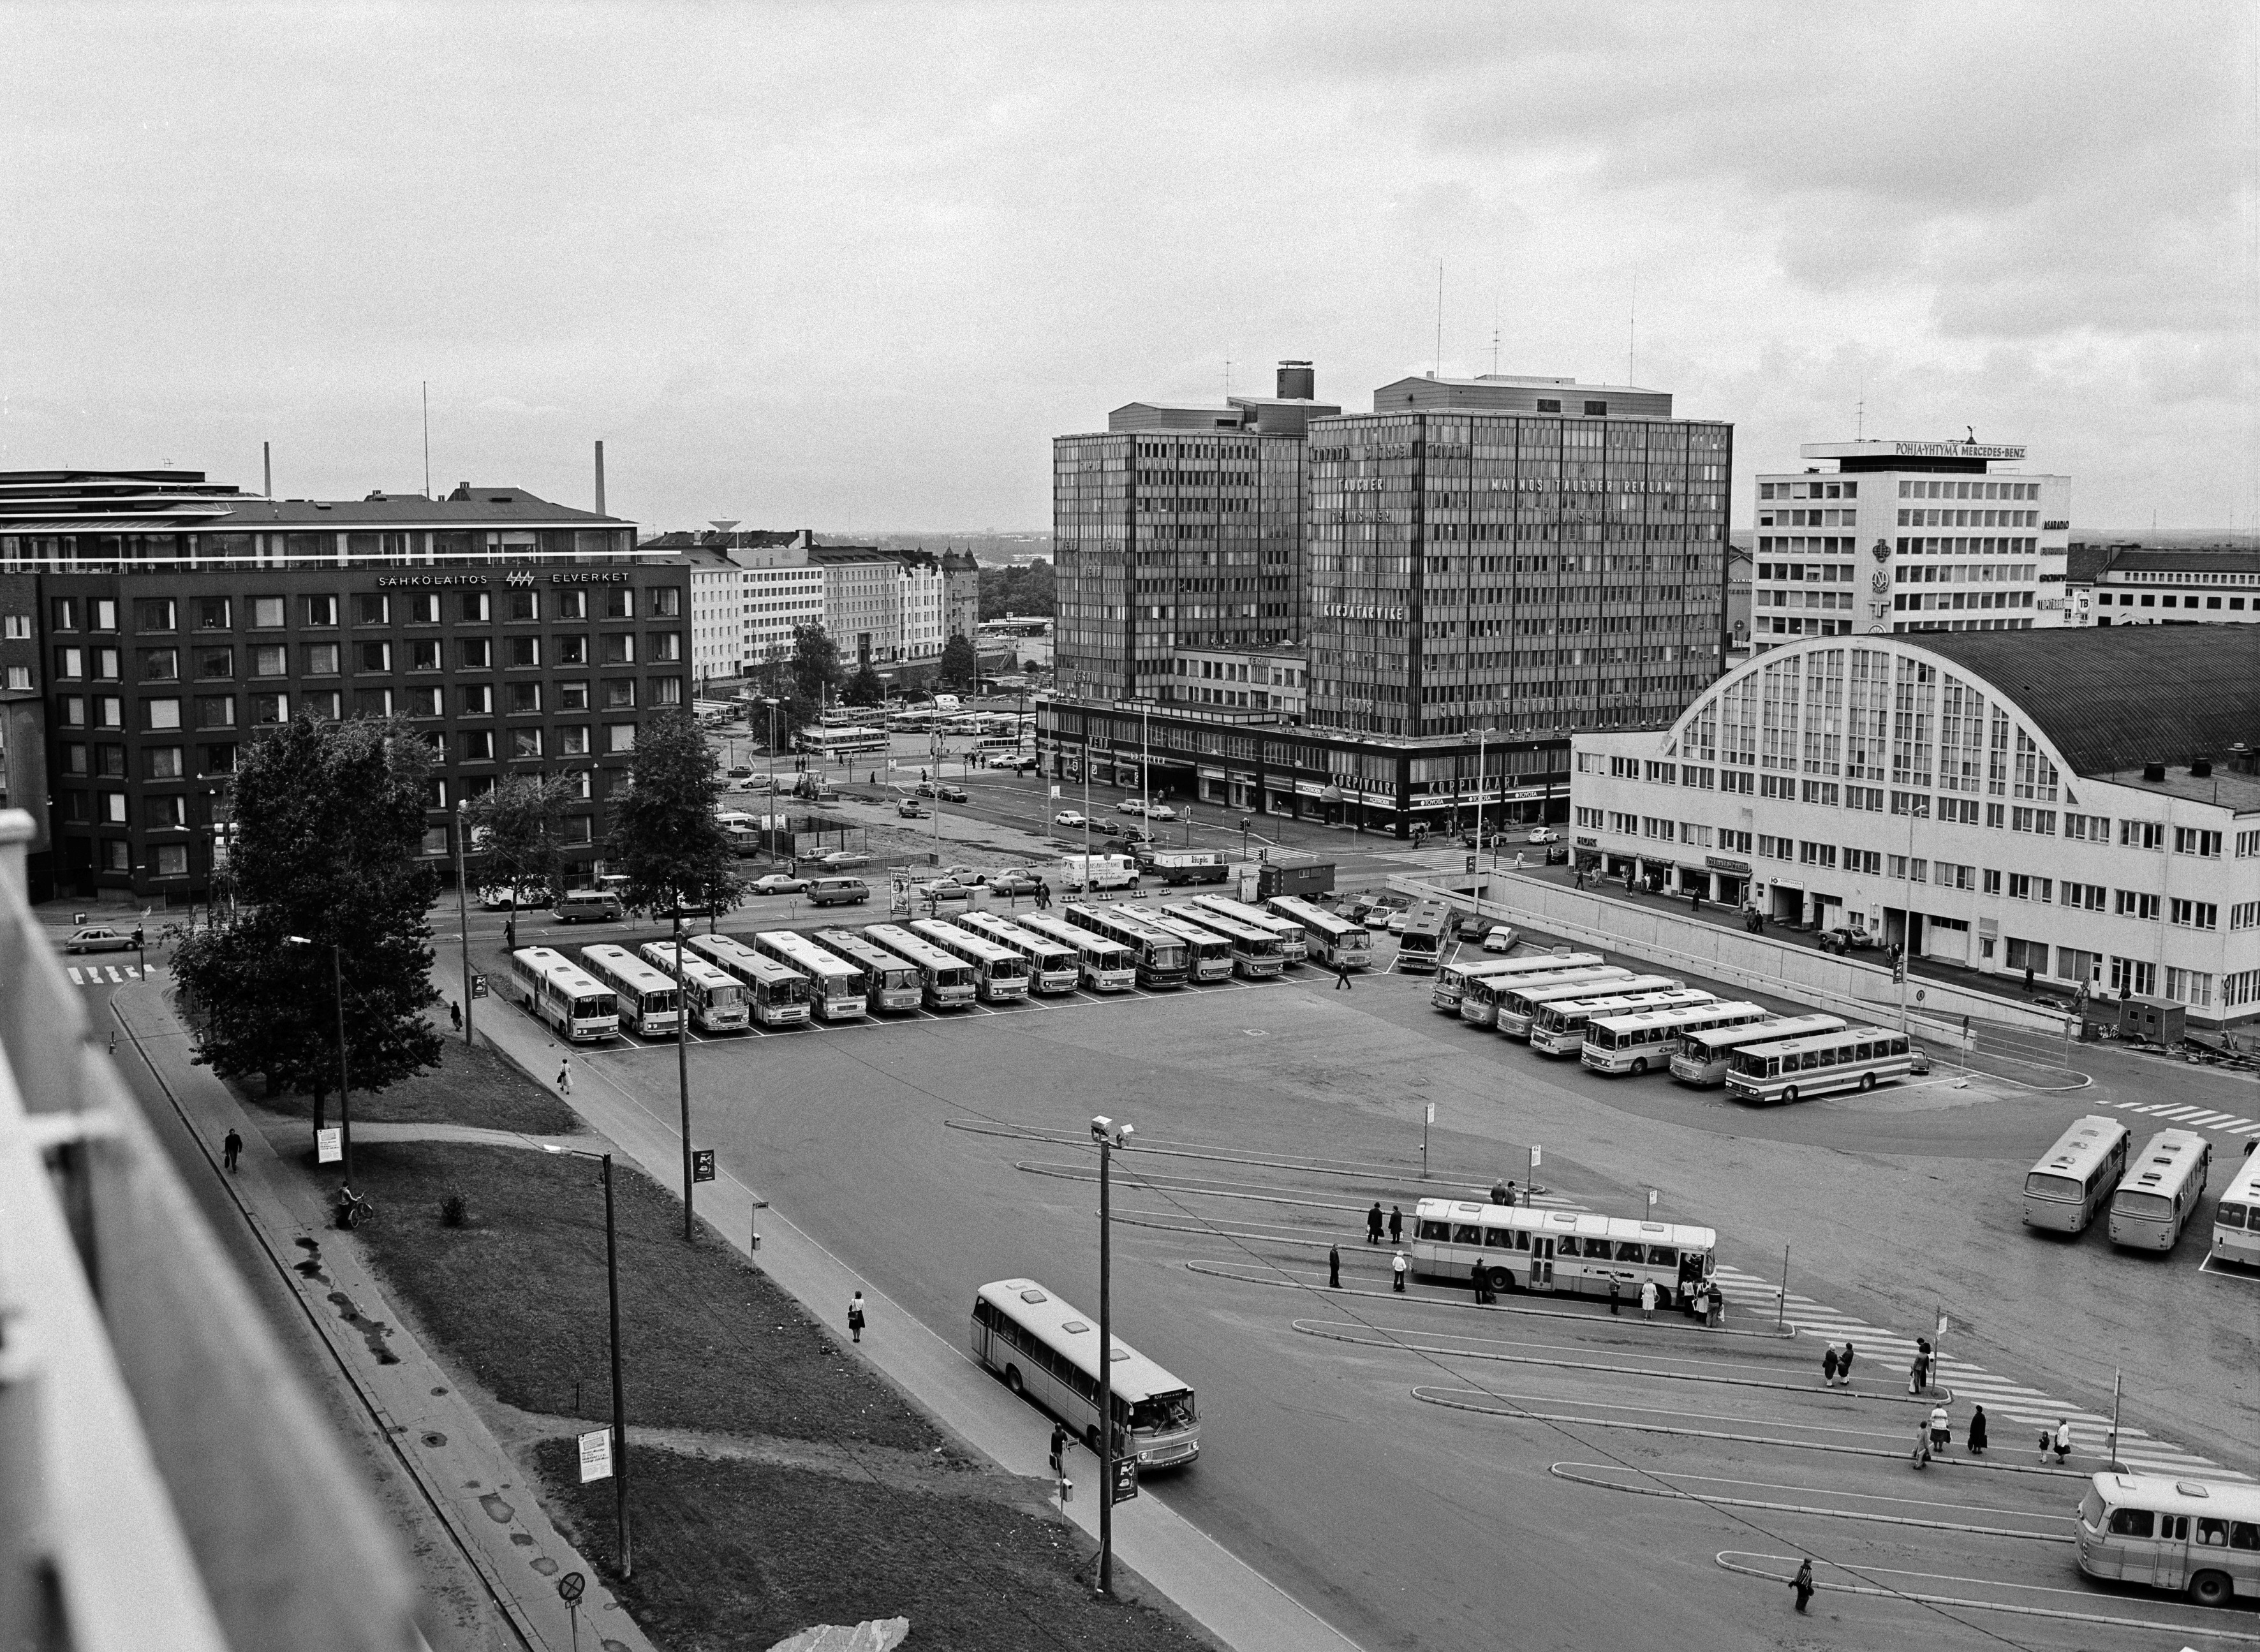 Kamppi, linja-autoasema. Vasemmalla Fredrikinkatu 44. Oikealla Salomonkatu 17, 15 (vas. lukien). Panoraama Annankatu 34:stä. Syyskuu 1977.